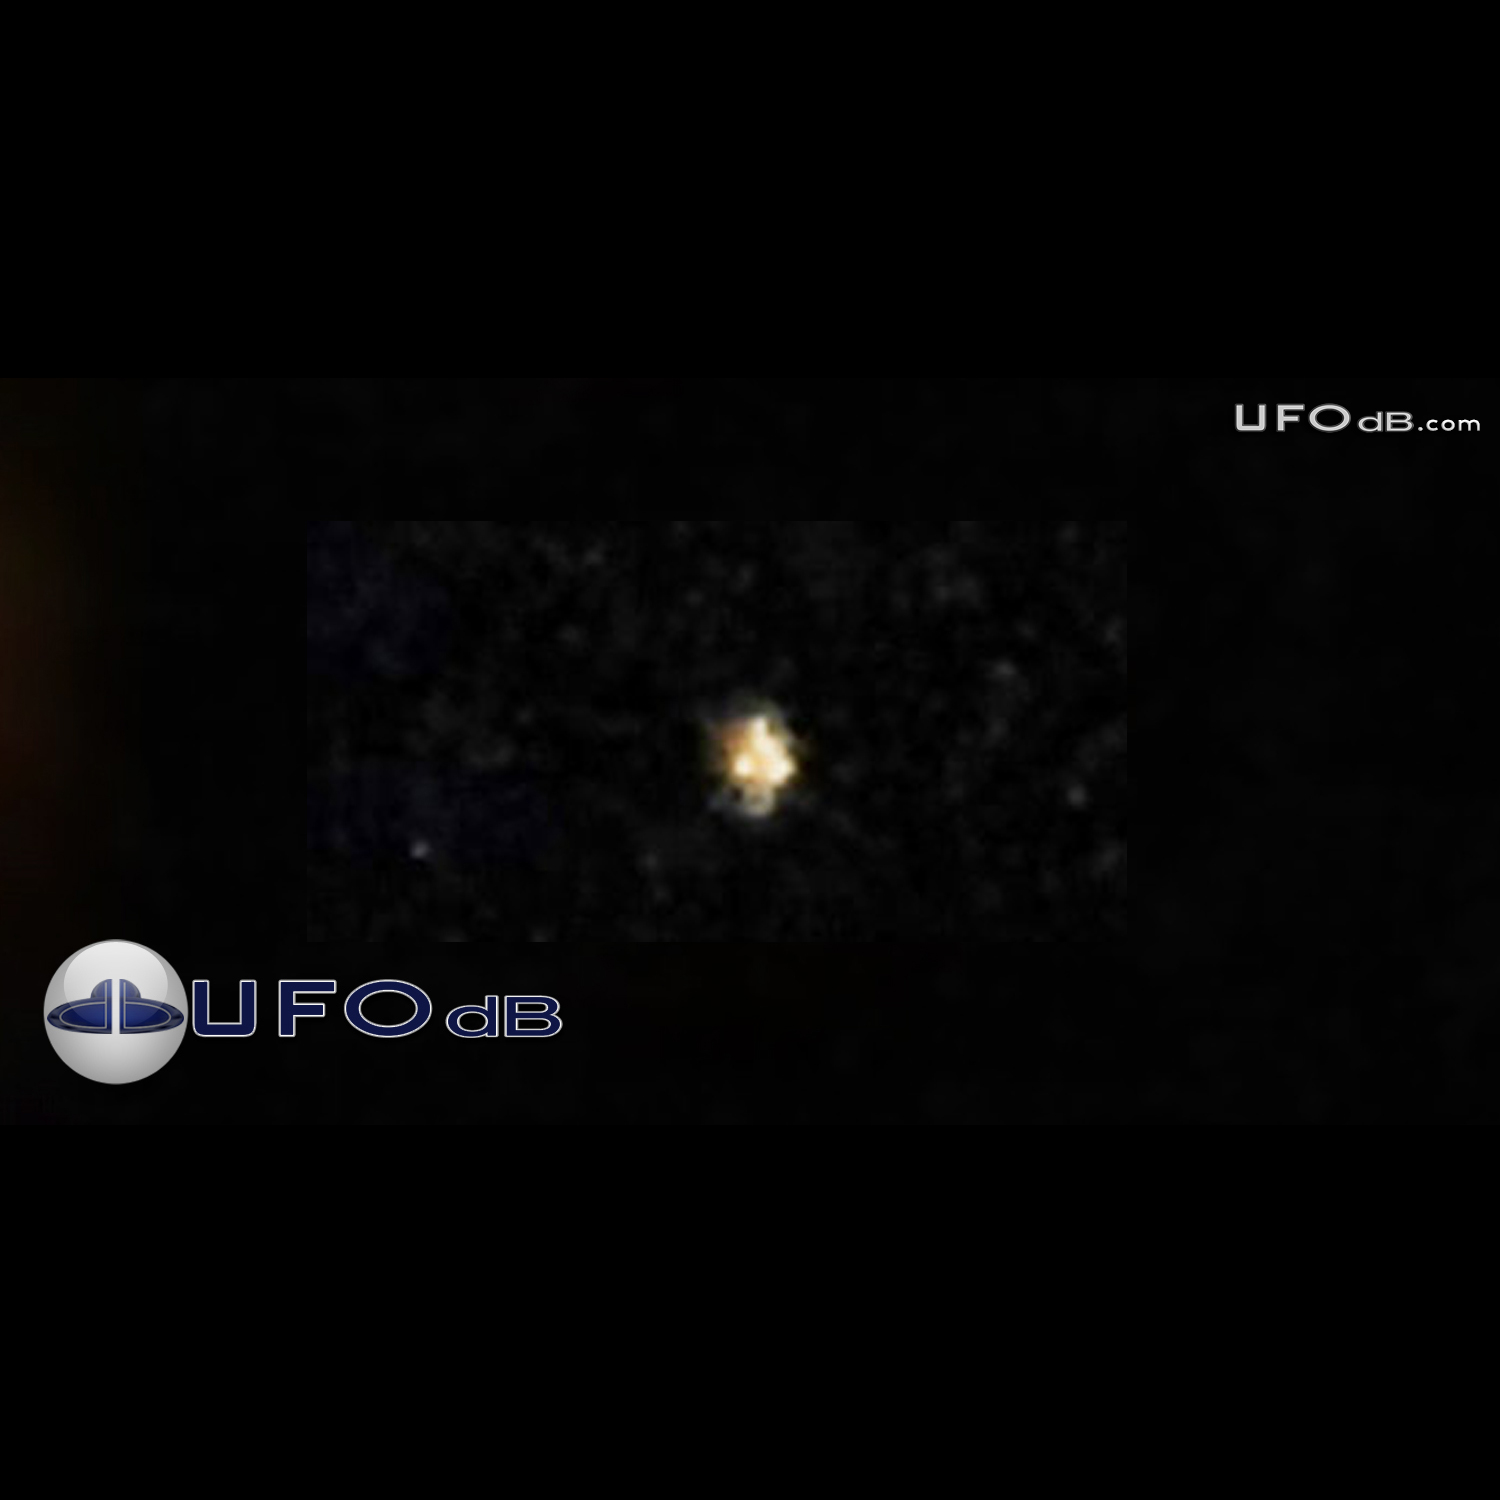 Odd Looking Star is a UFO | St. Joseph, Missouri, USA | April 12 2011 UFO Picture #300-1